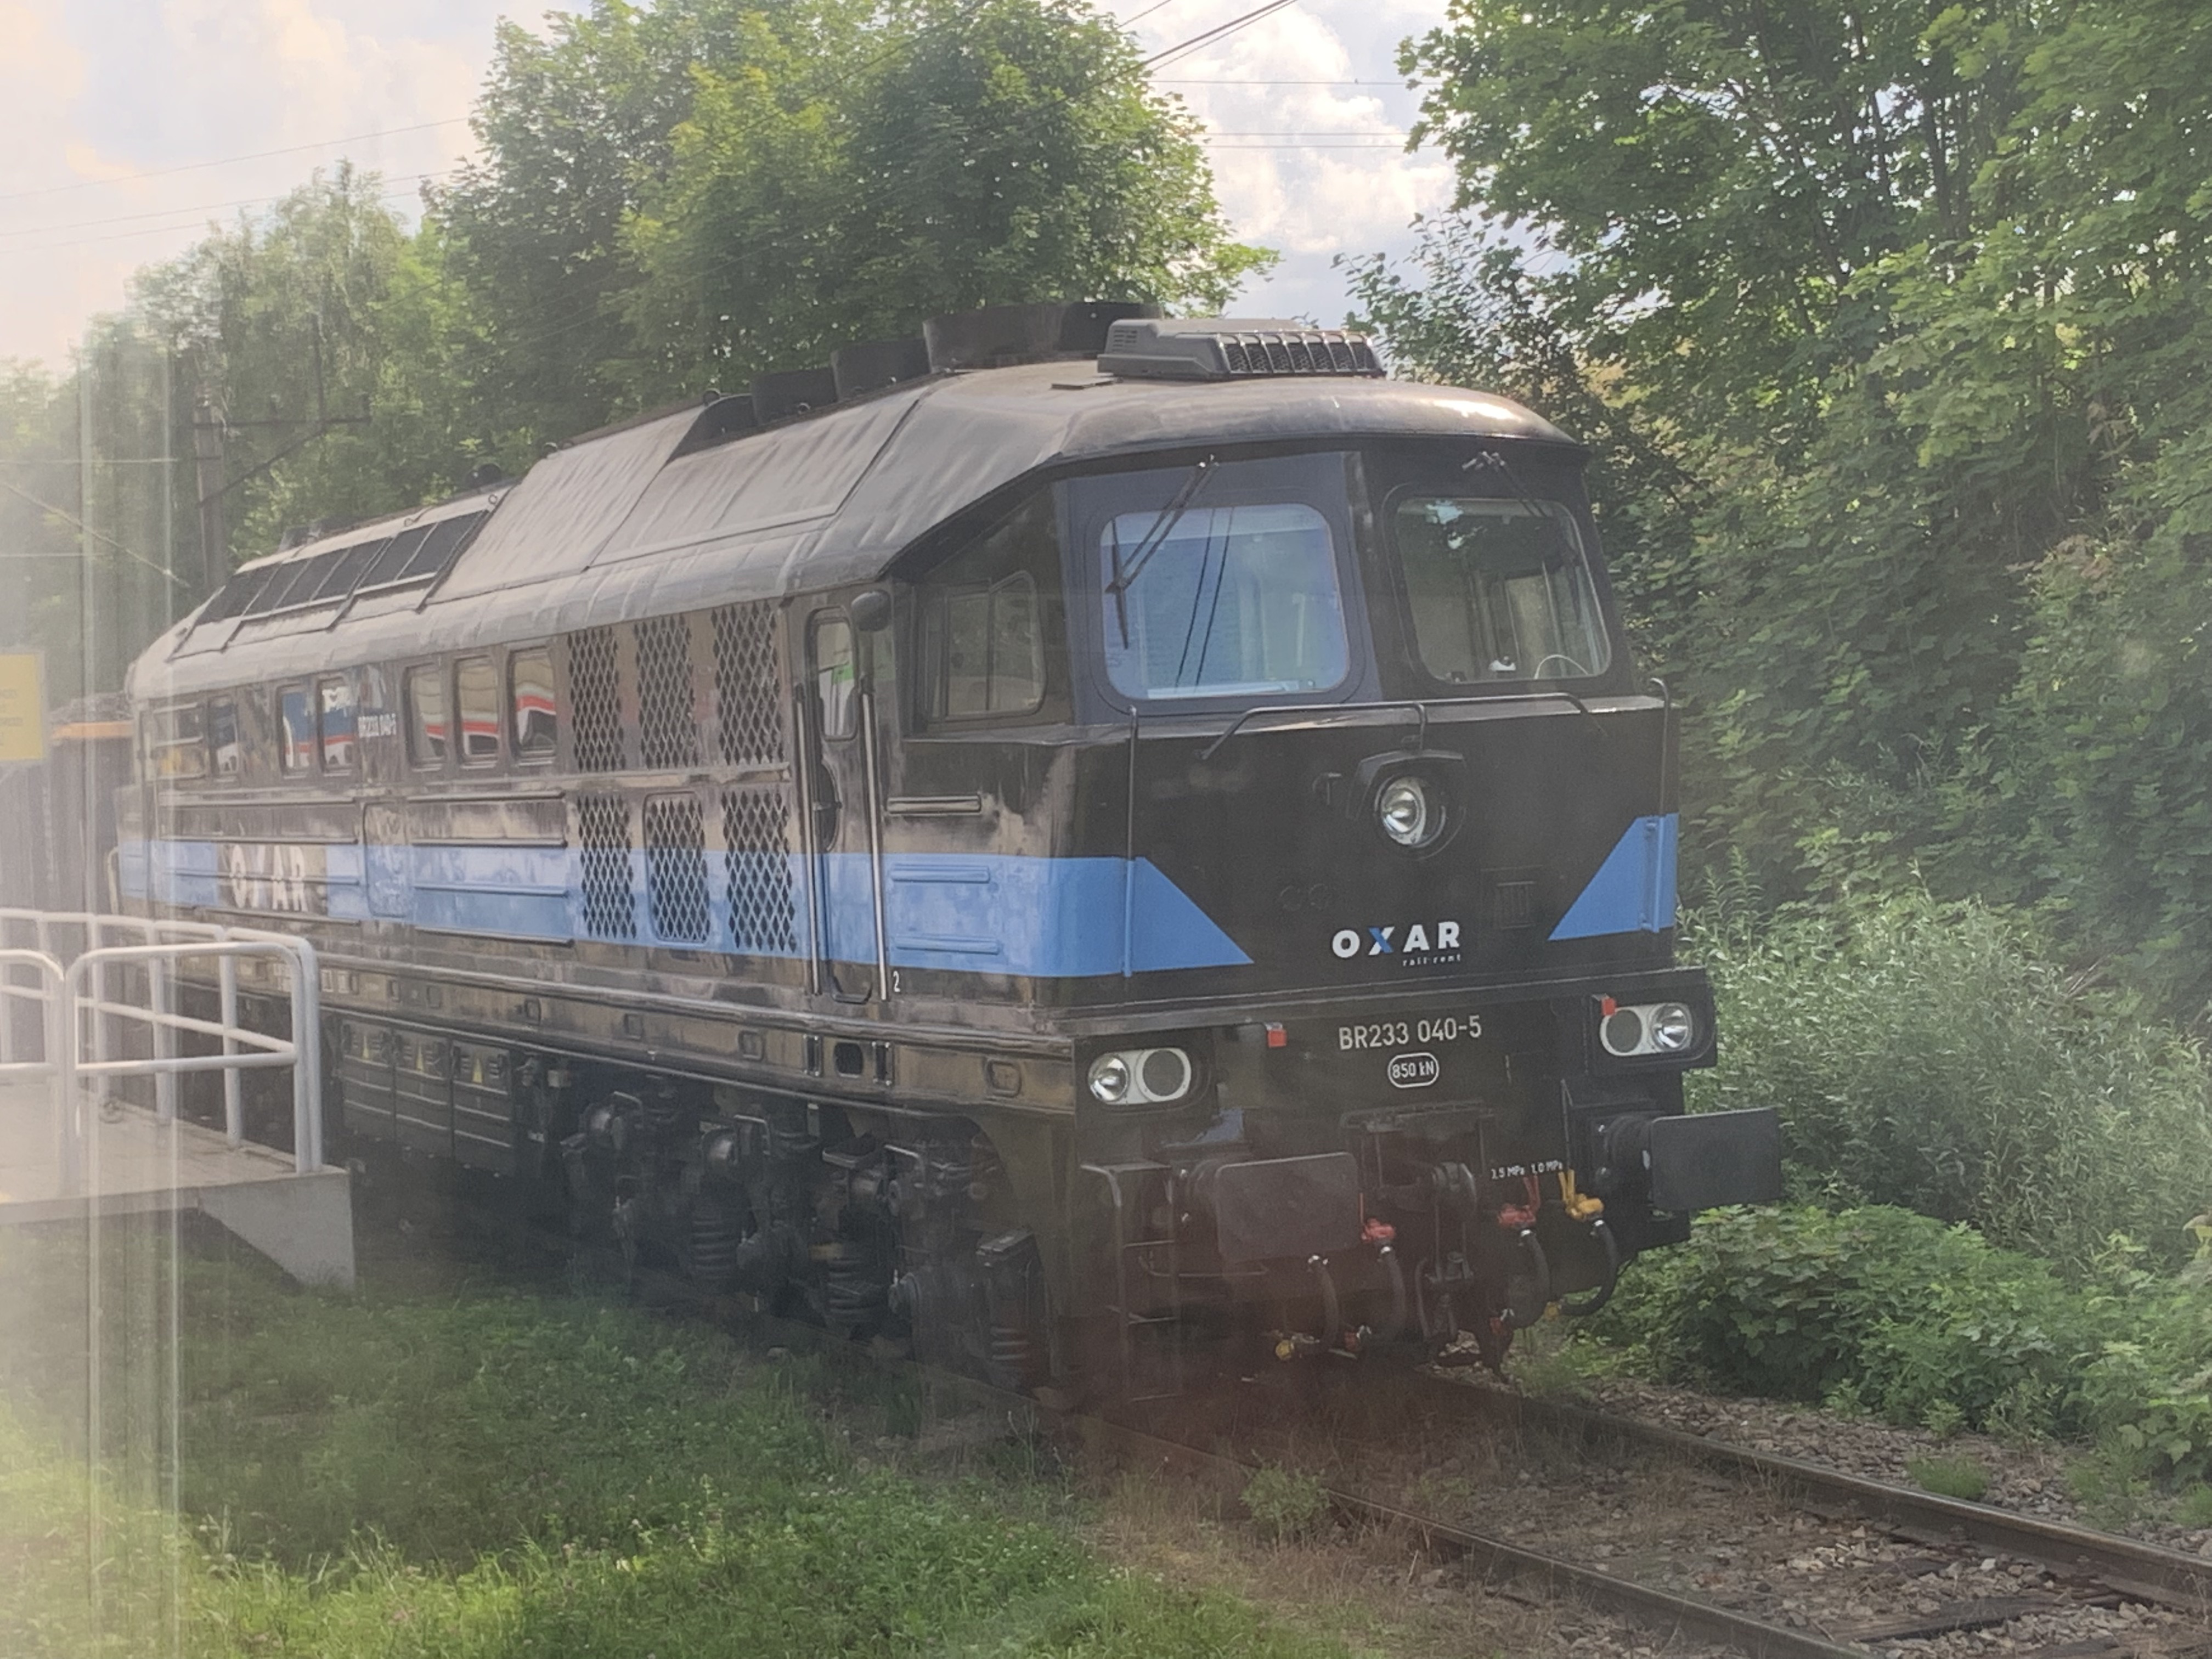 M62 firmy OXAR Rail Rent. 2021 rok. Zdjęcie Karol Placha Hetman